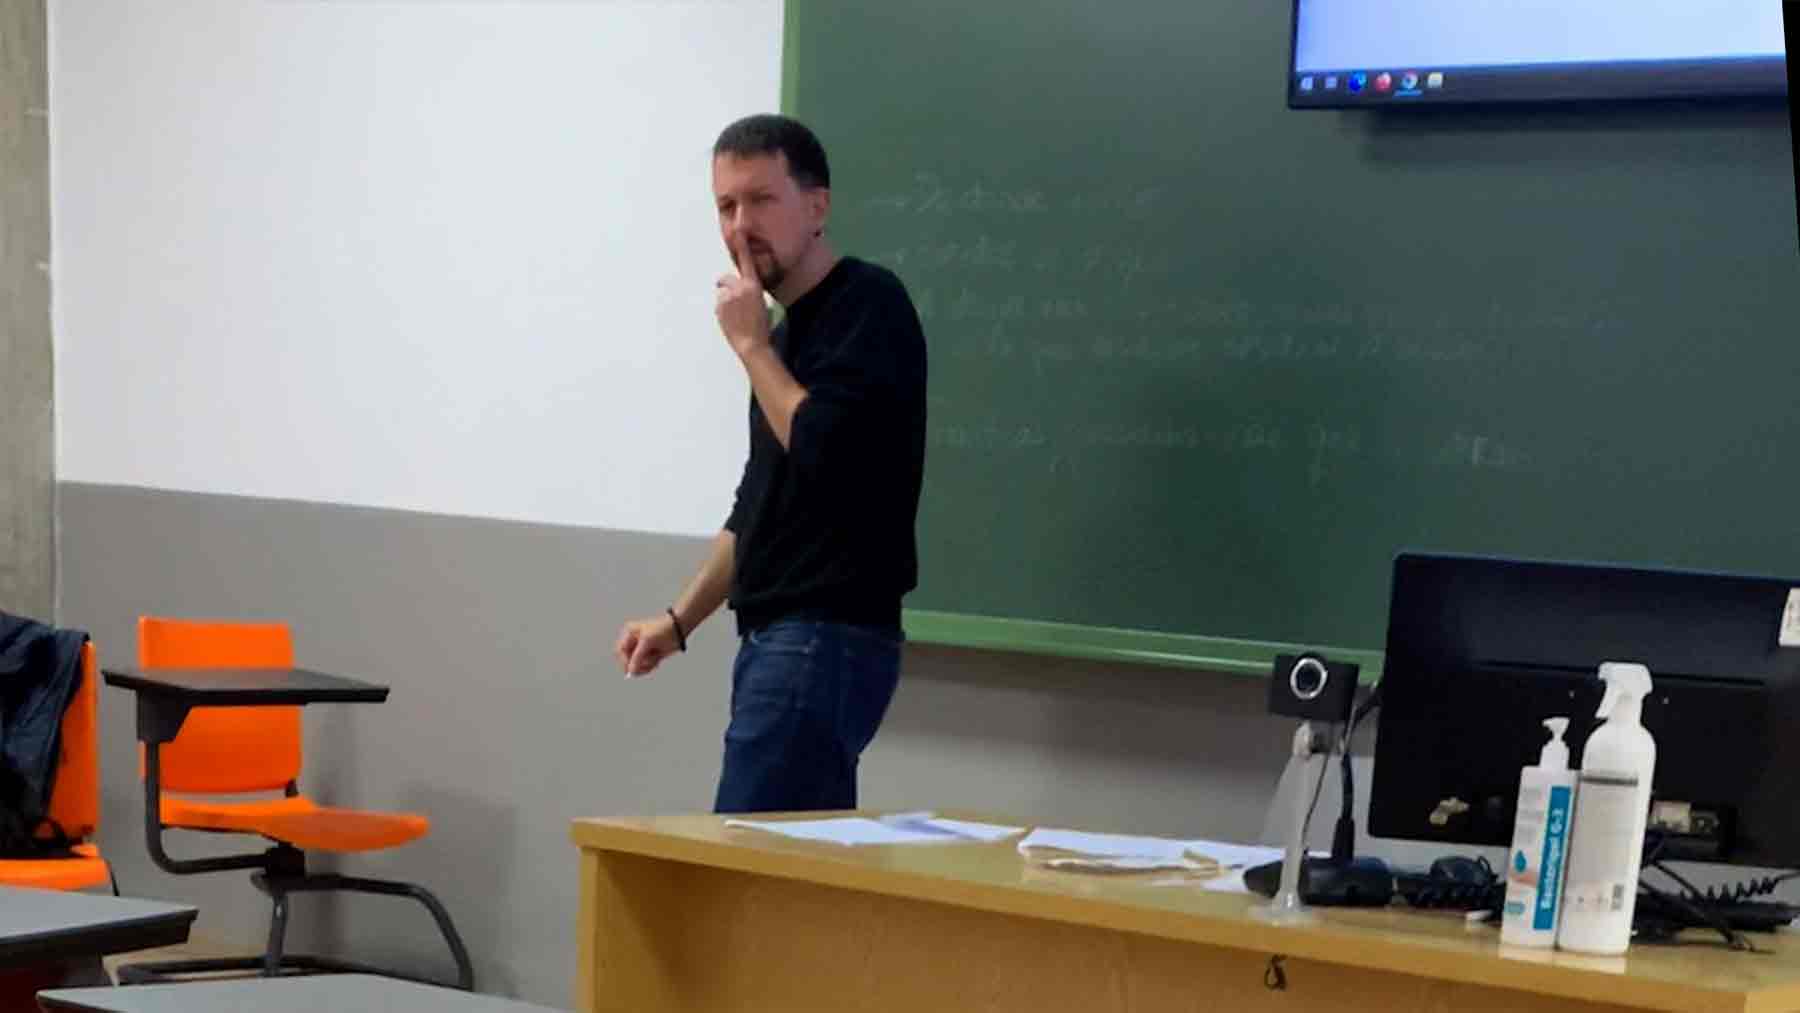 Pablo Iglesias dando clase en la universidad Complutense.